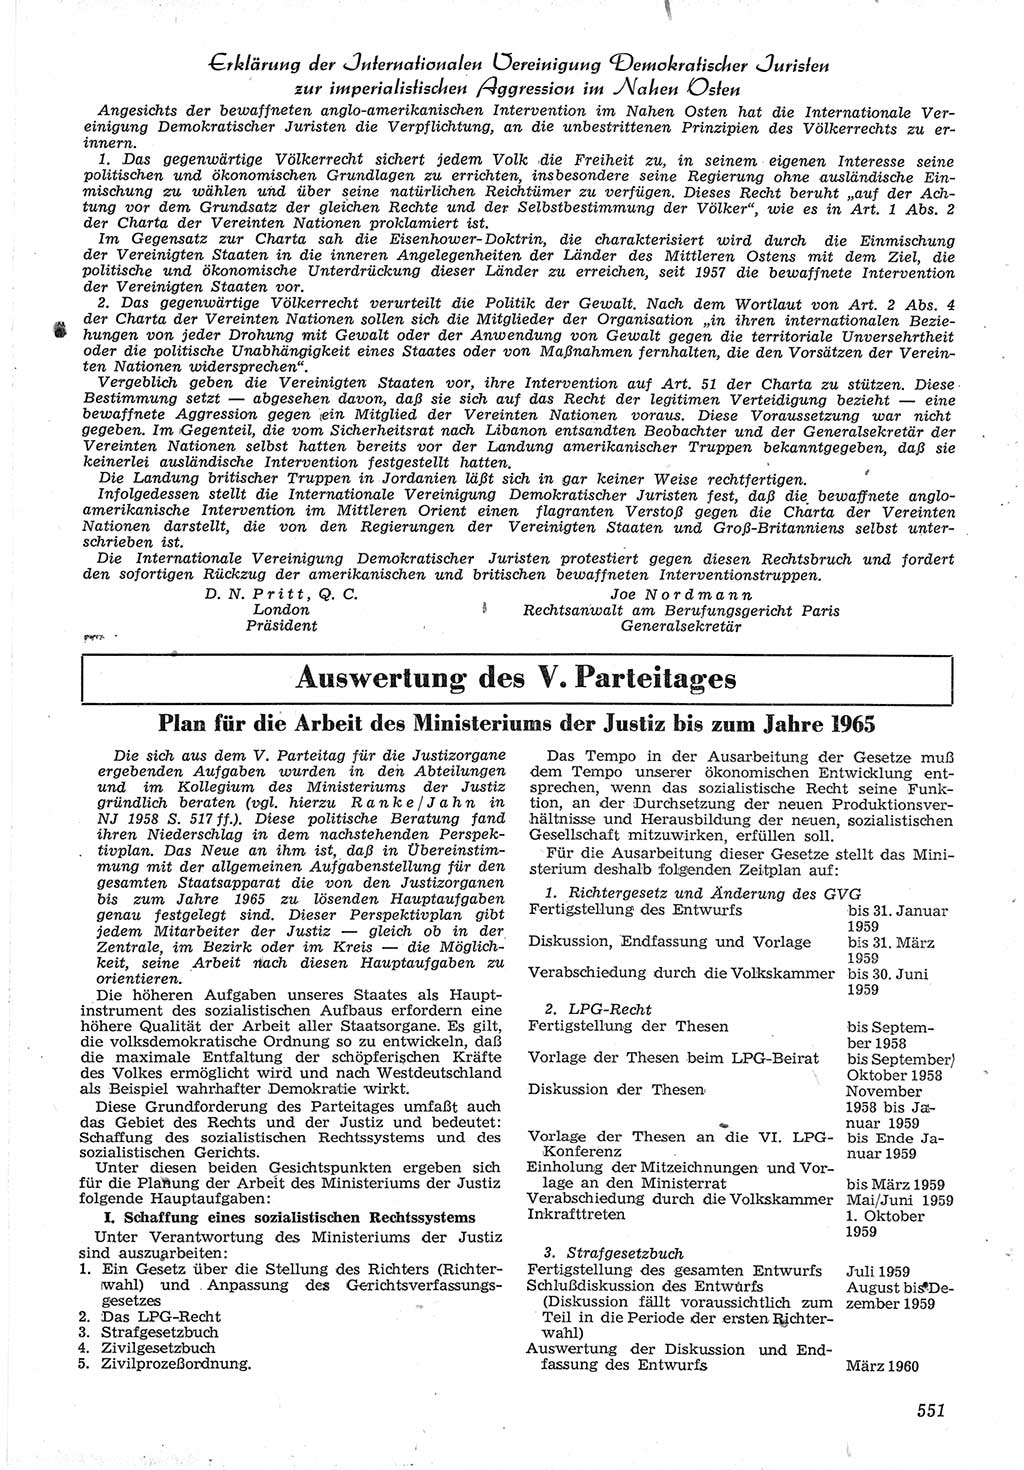 Neue Justiz (NJ), Zeitschrift für Recht und Rechtswissenschaft [Deutsche Demokratische Republik (DDR)], 12. Jahrgang 1958, Seite 551 (NJ DDR 1958, S. 551)